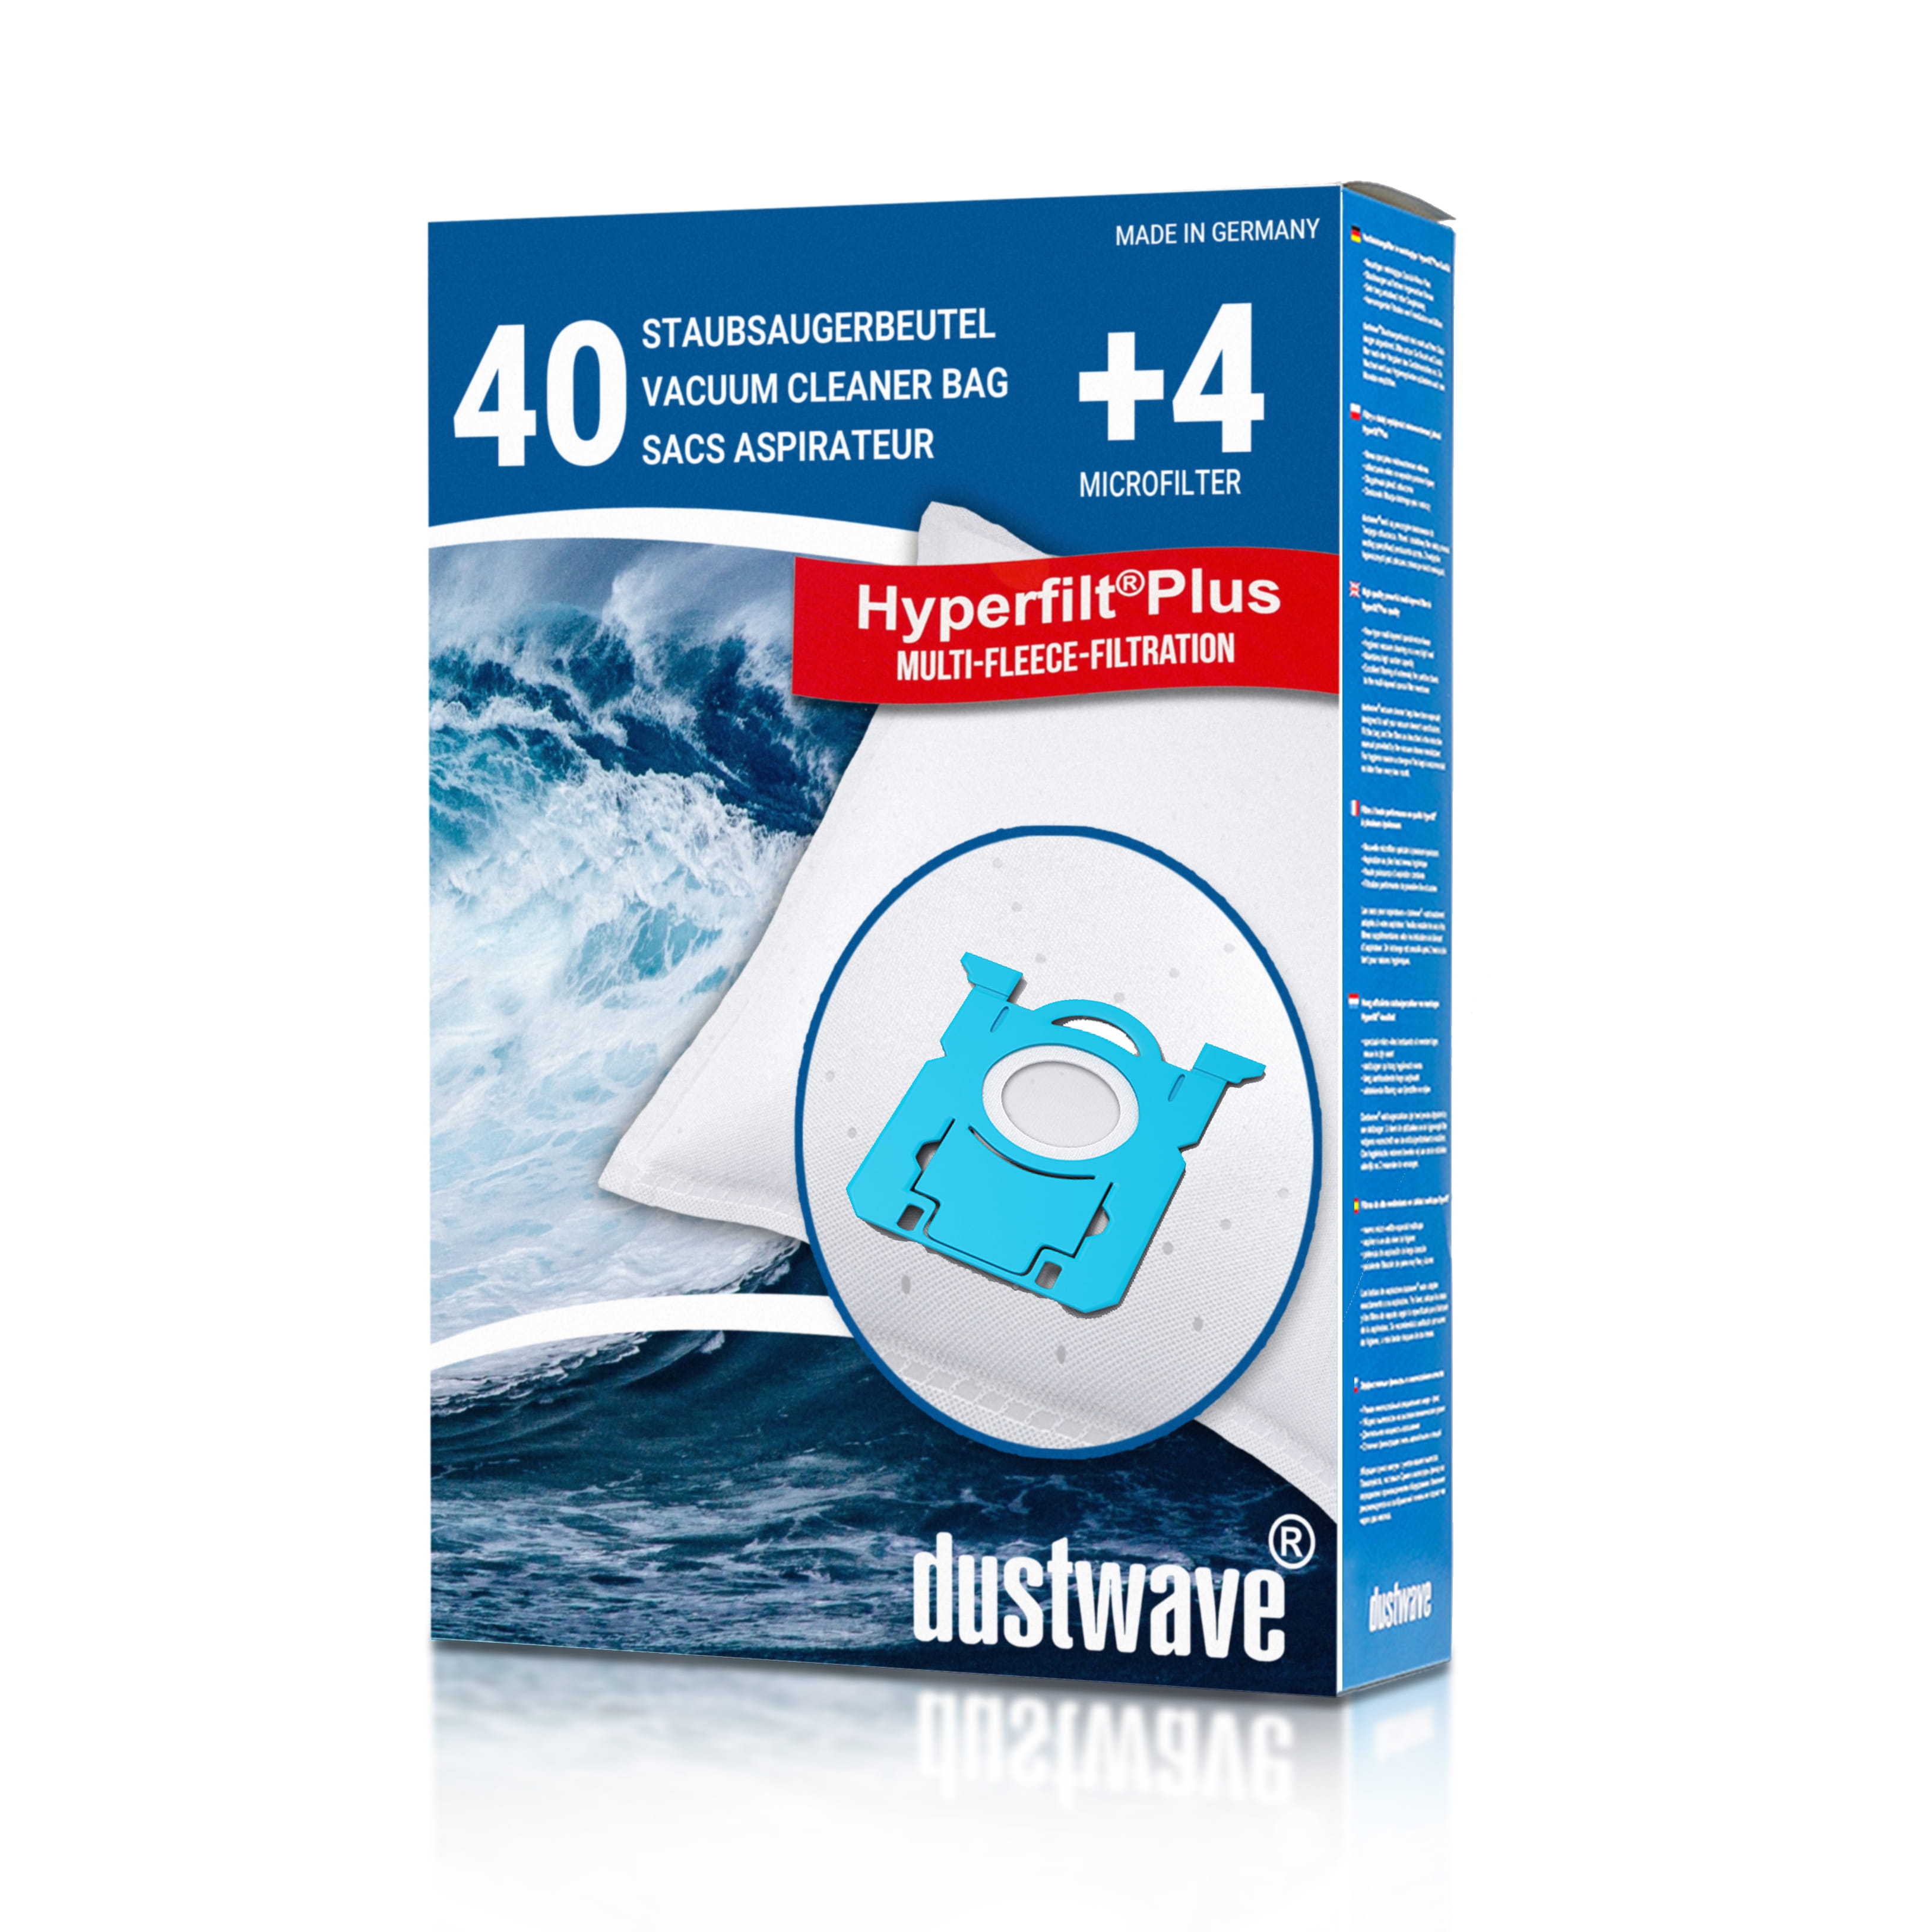 Dustwave® 40 Staubsaugerbeutel für AEG VX6-2-Anim / VX6-2-Park - hocheffizient, mehrlagiges Mikrovlies mit Hygieneverschluss - Made in Germany